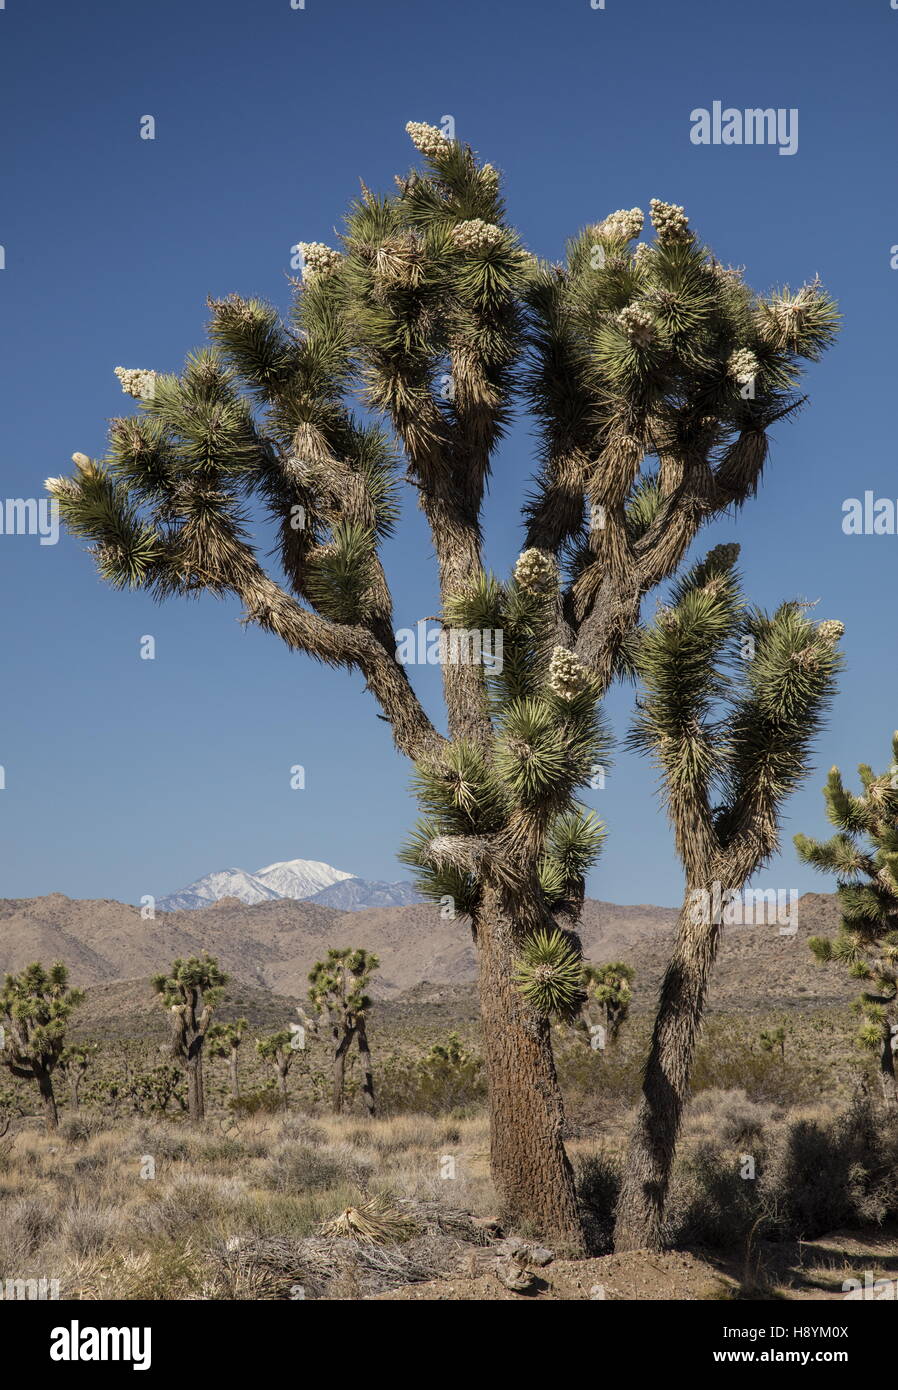 Joshua Tree, Yucca brevifolia en fleur, le parc national Joshua Tree, désert de Mojave, en Californie. Banque D'Images